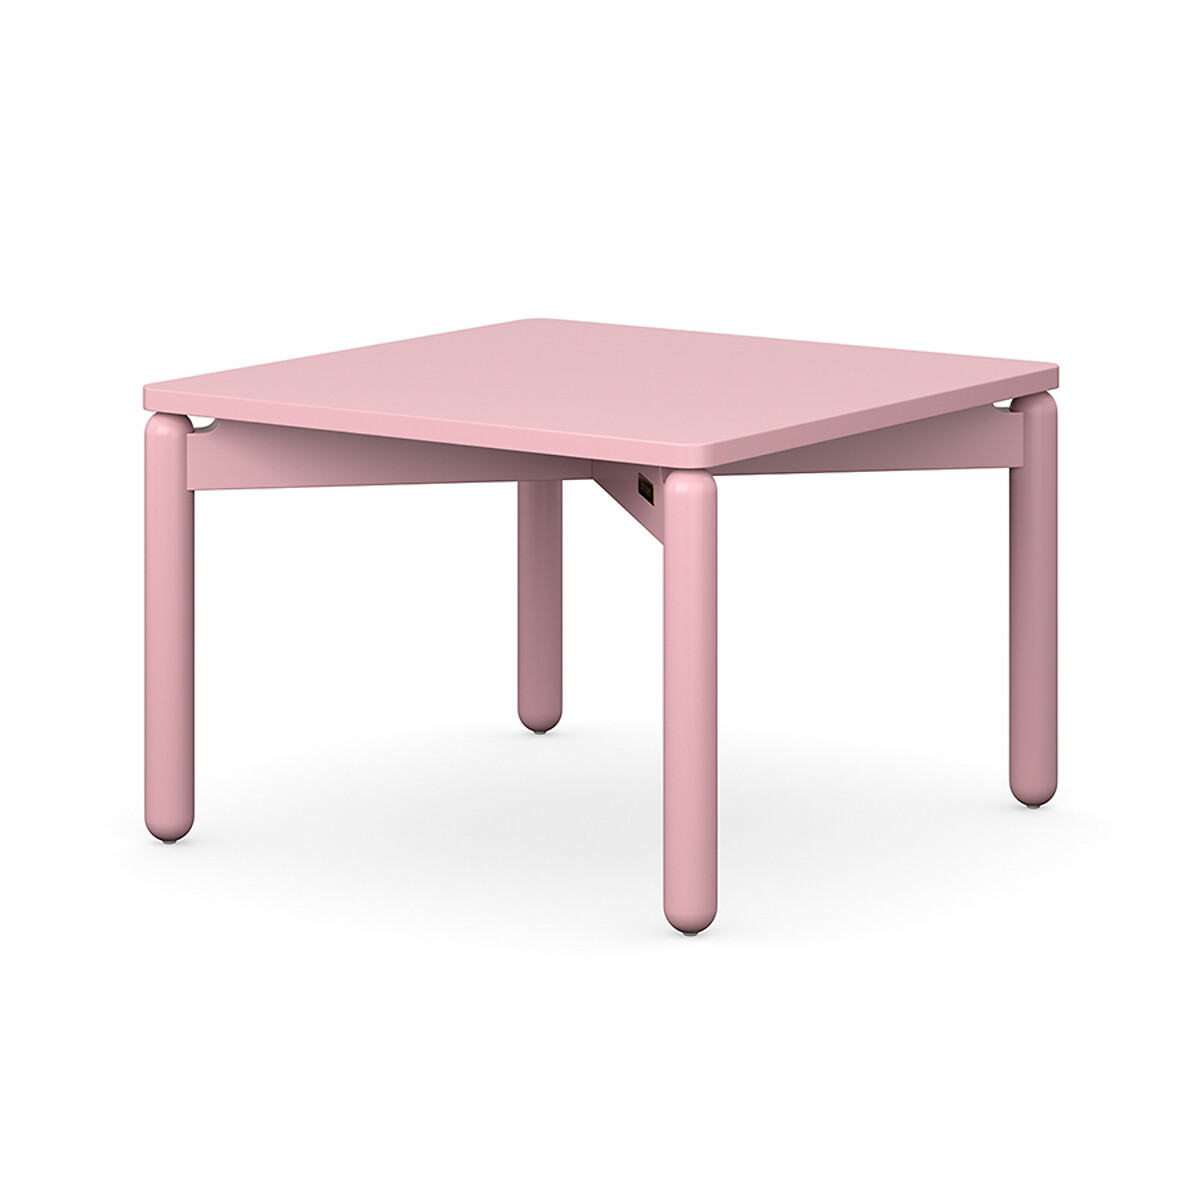 Столик кофейный Saga 60х60 см  2 персоны розовый LaRedoute, размер 2 персоны - фото 1